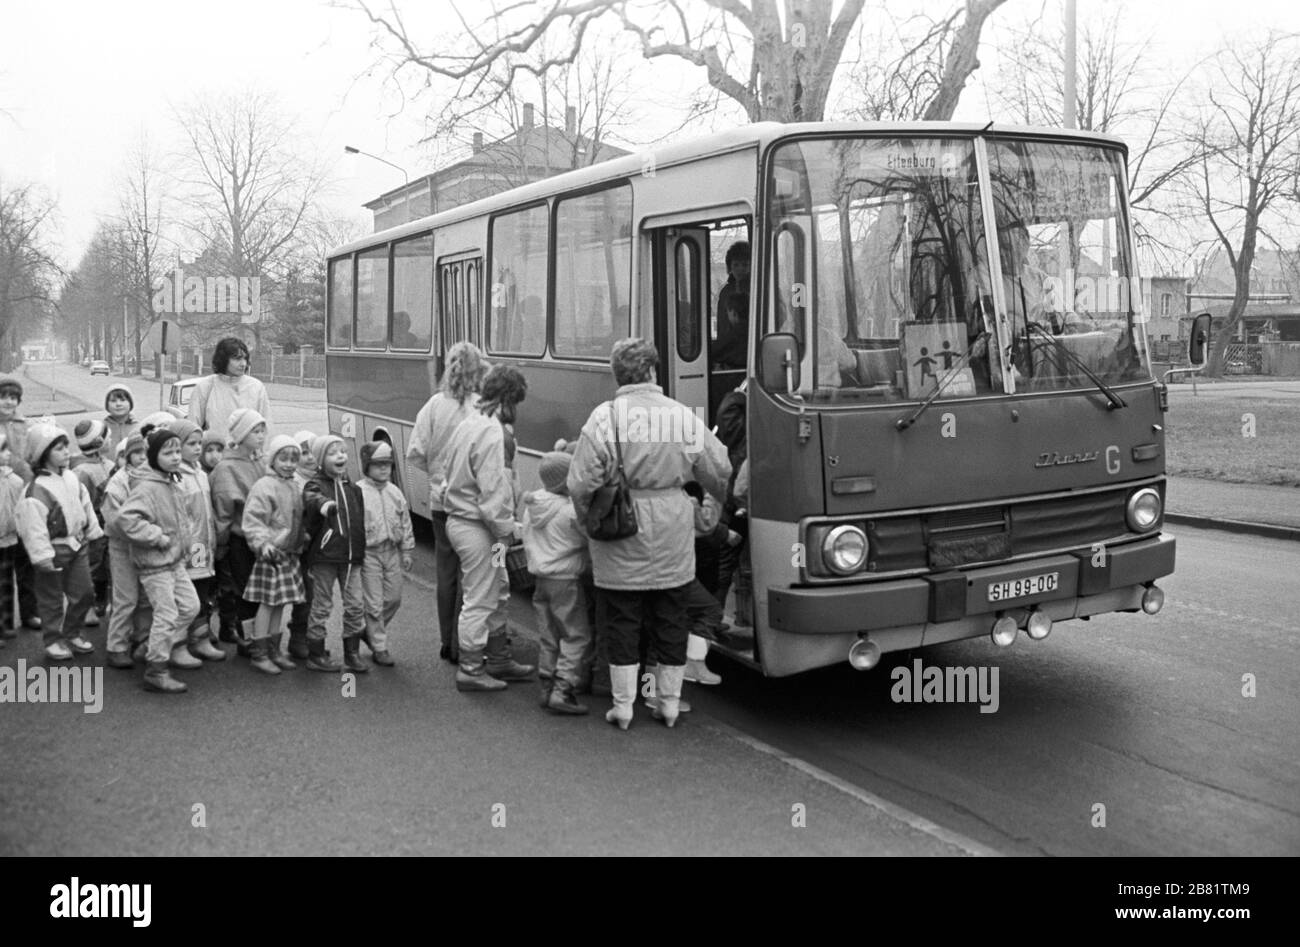 30 novembre 1988, Sassonia, Eilenburg: Un viaggio in autobus (Ikarus) è stato intrapreso a metà del 1989 da bambini di un asilo nido a Eilenburg con i loro insegnanti e madri asilo. Data esatta dell'ammissione non nota. Foto: Volkmar Heinz/dpa-Zentralbild/ZB Foto Stock